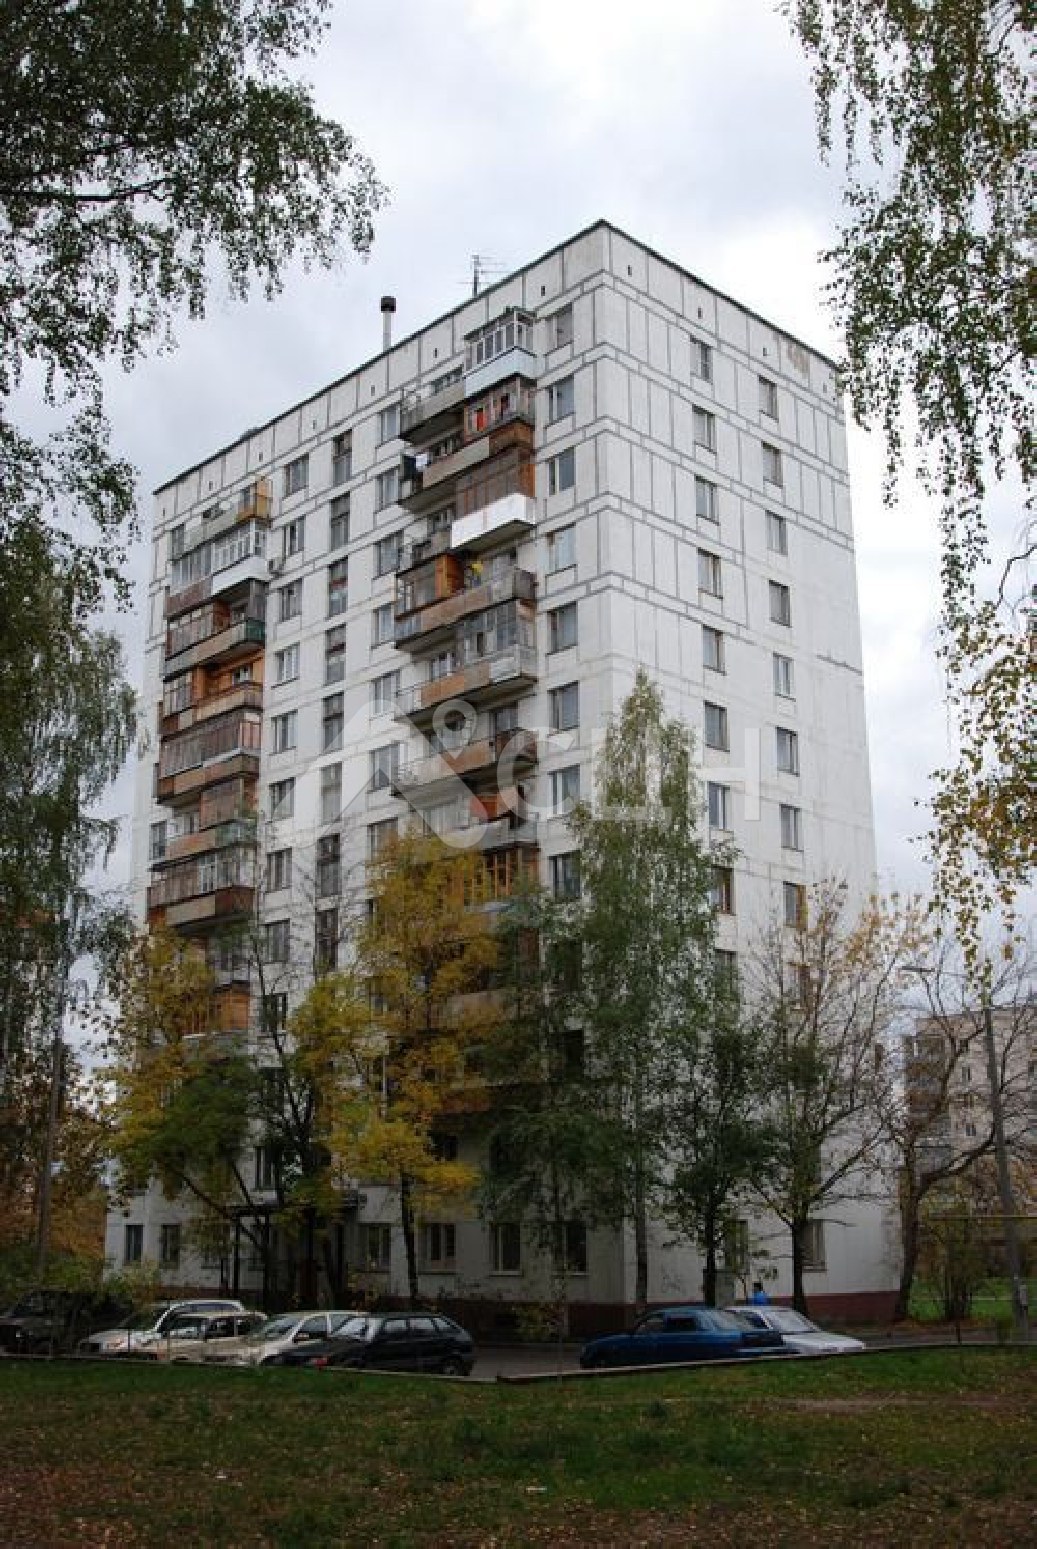 объявления саров недвижимость
: Г. Саров, улица Бессарабенко, 7, 1-комн квартира, этаж 12 из 12, аренда.